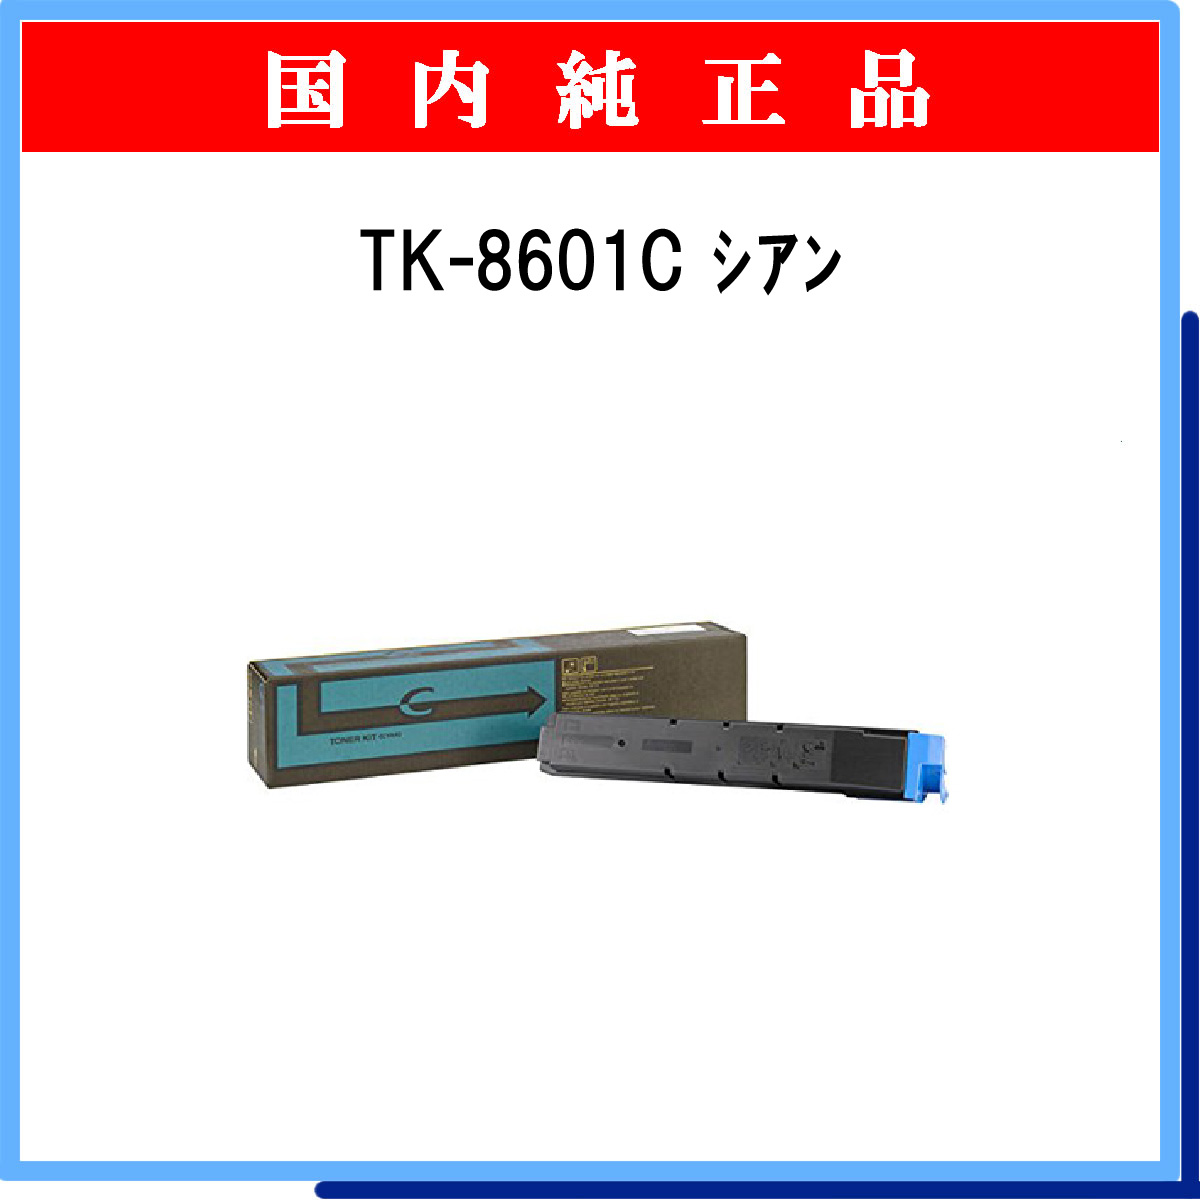 TK-8601C 純正